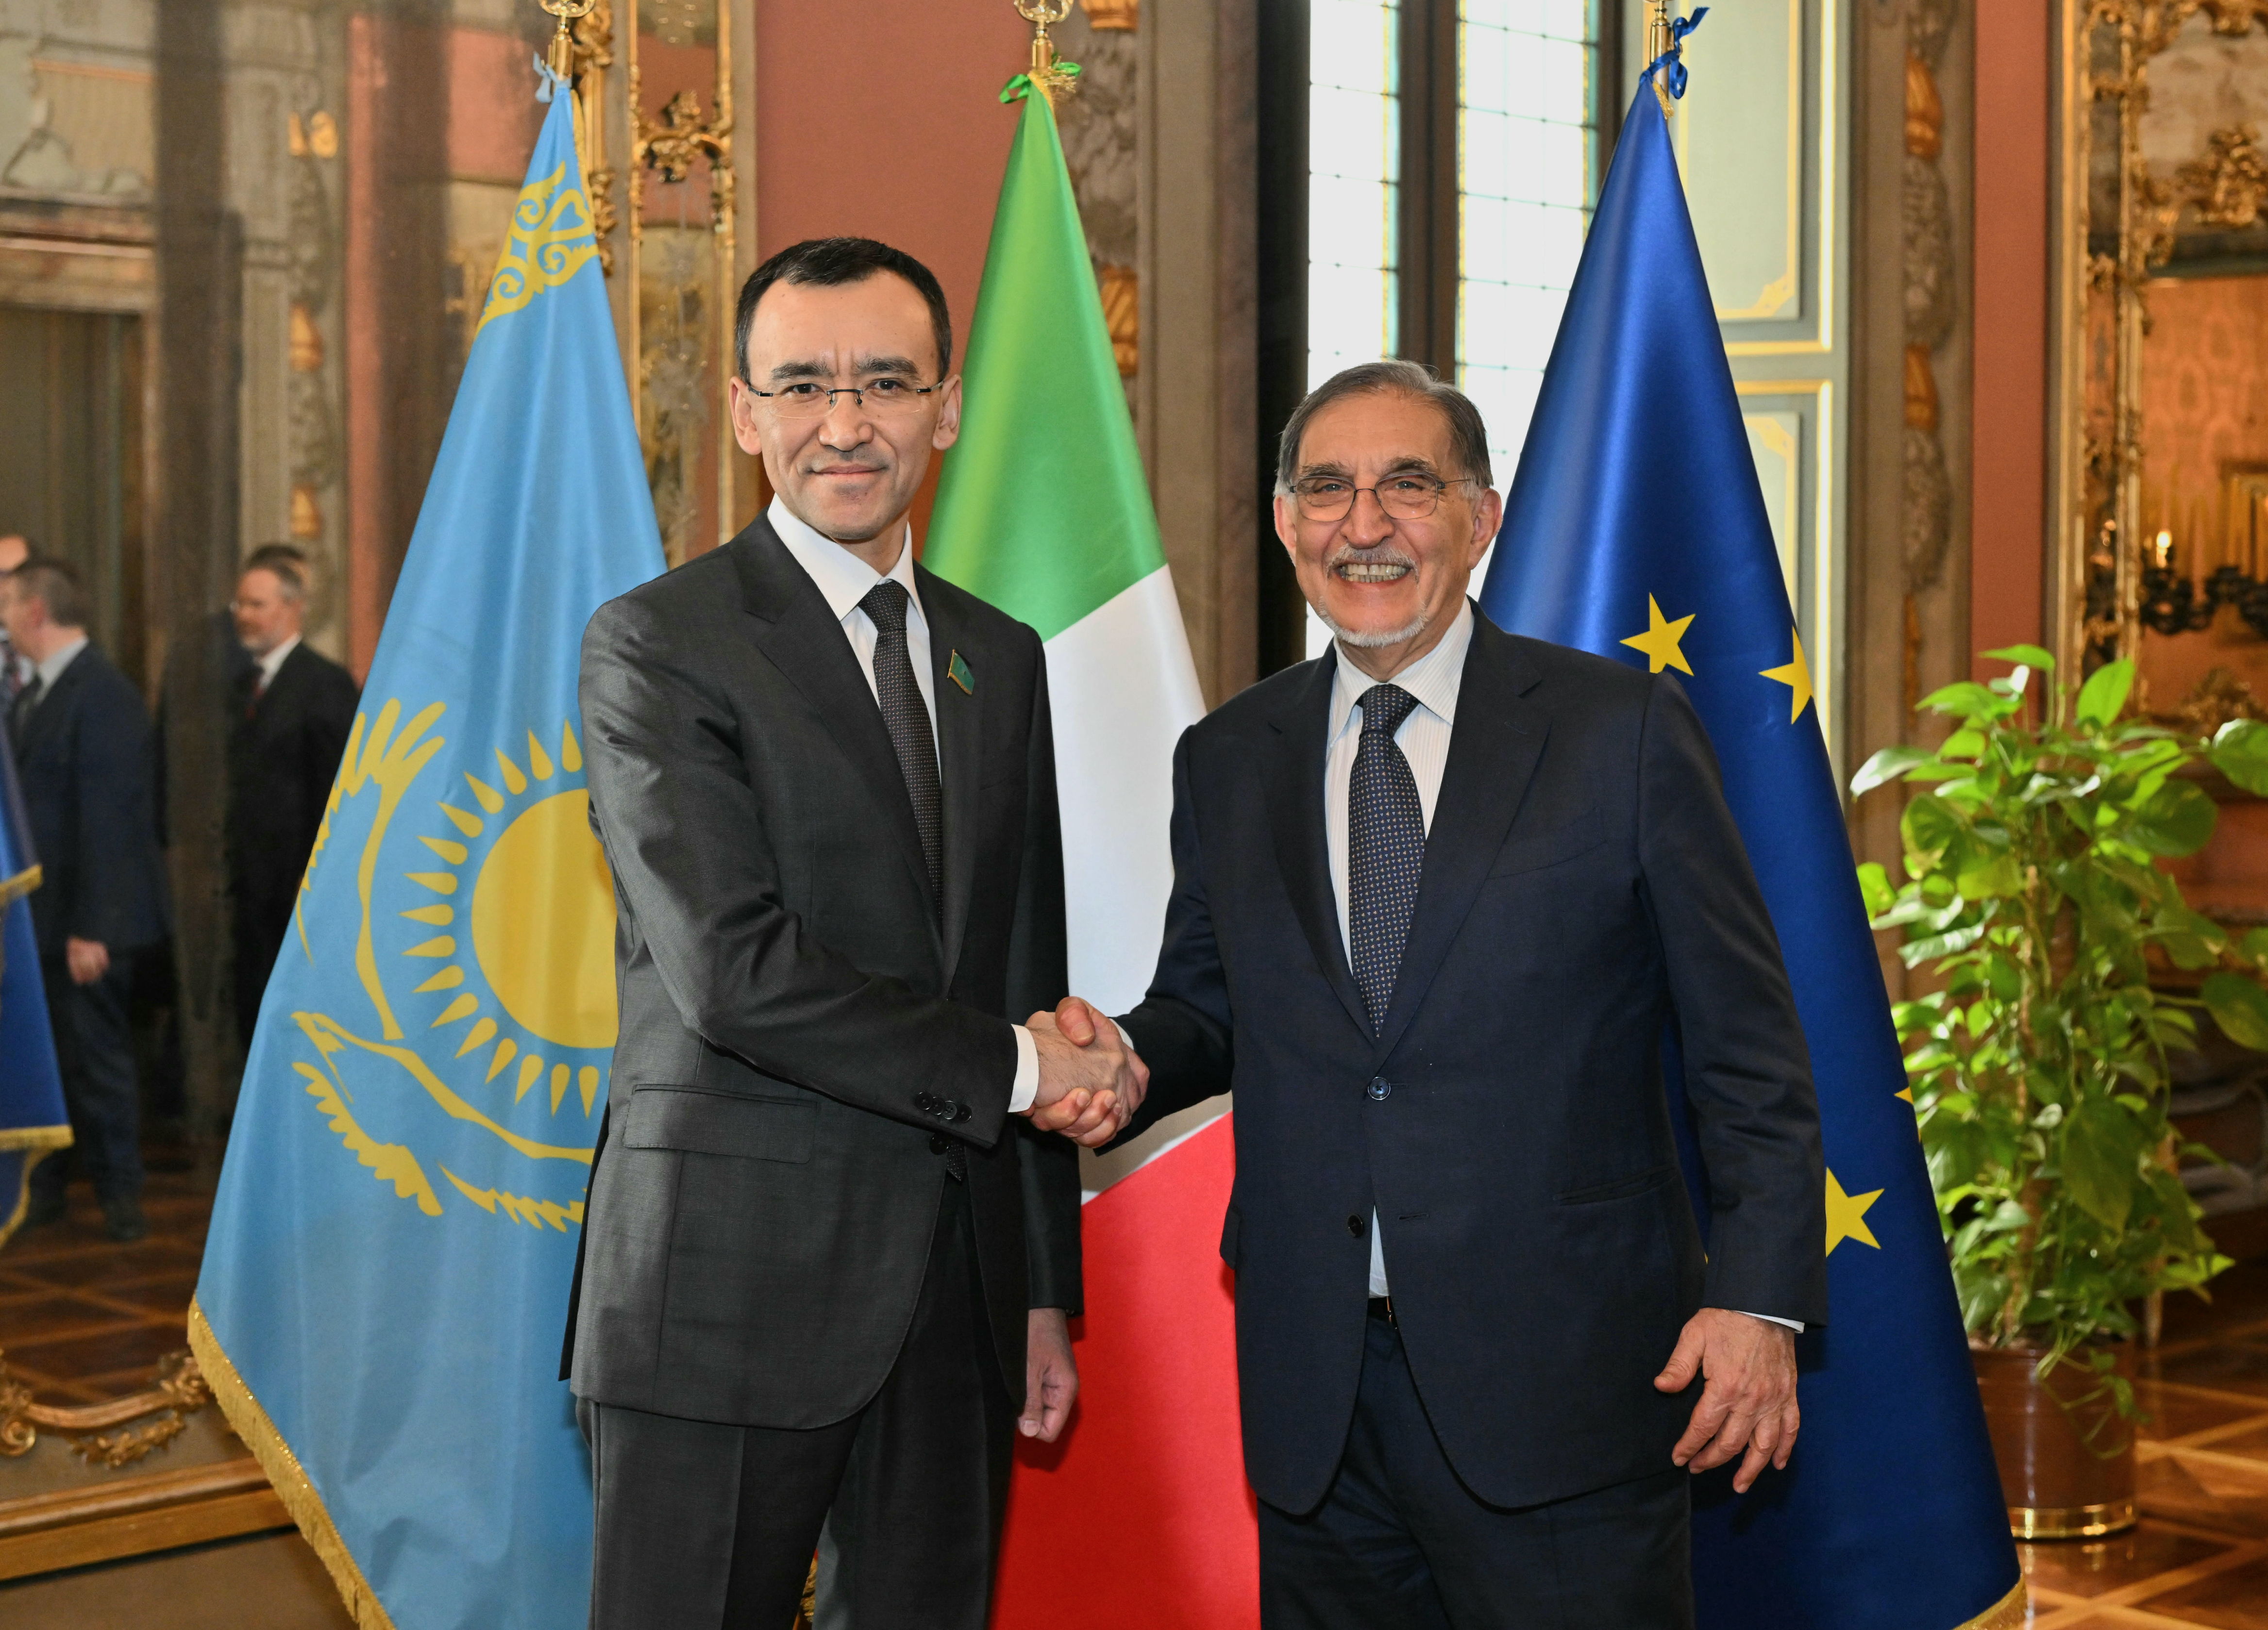 Делегация Сената Парламента Республики Казахстан во главе со Спикером Мауленом Ашимбаевым совершил рабочий визит в Италию